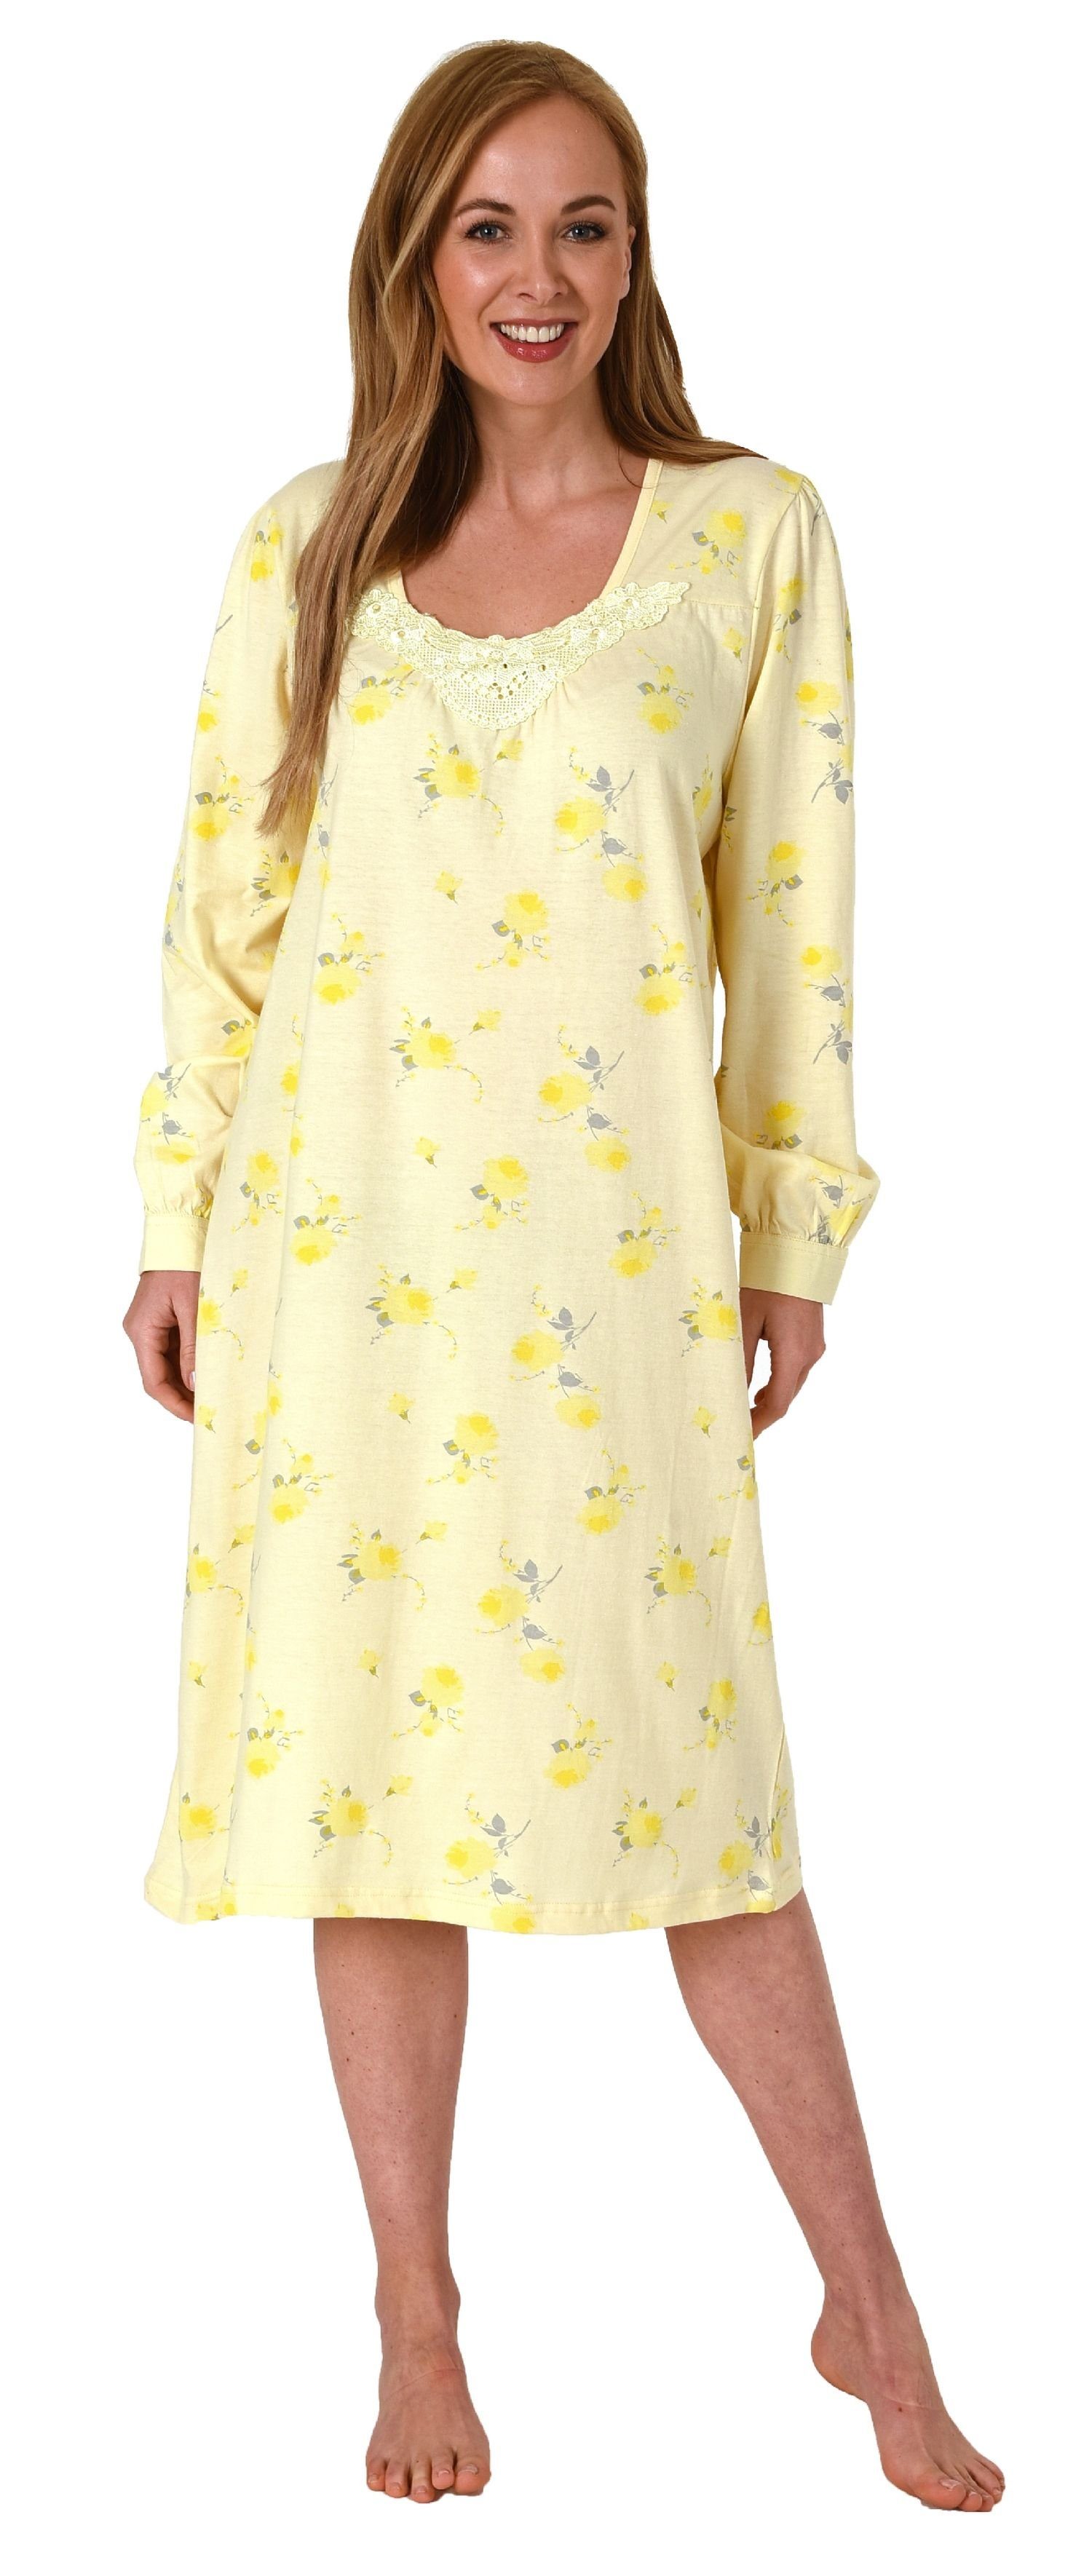 Normann Nachthemd Frauliches Damen Nachthemd mit Spitze, cm Länge, Knopfleiste am Hals gelb